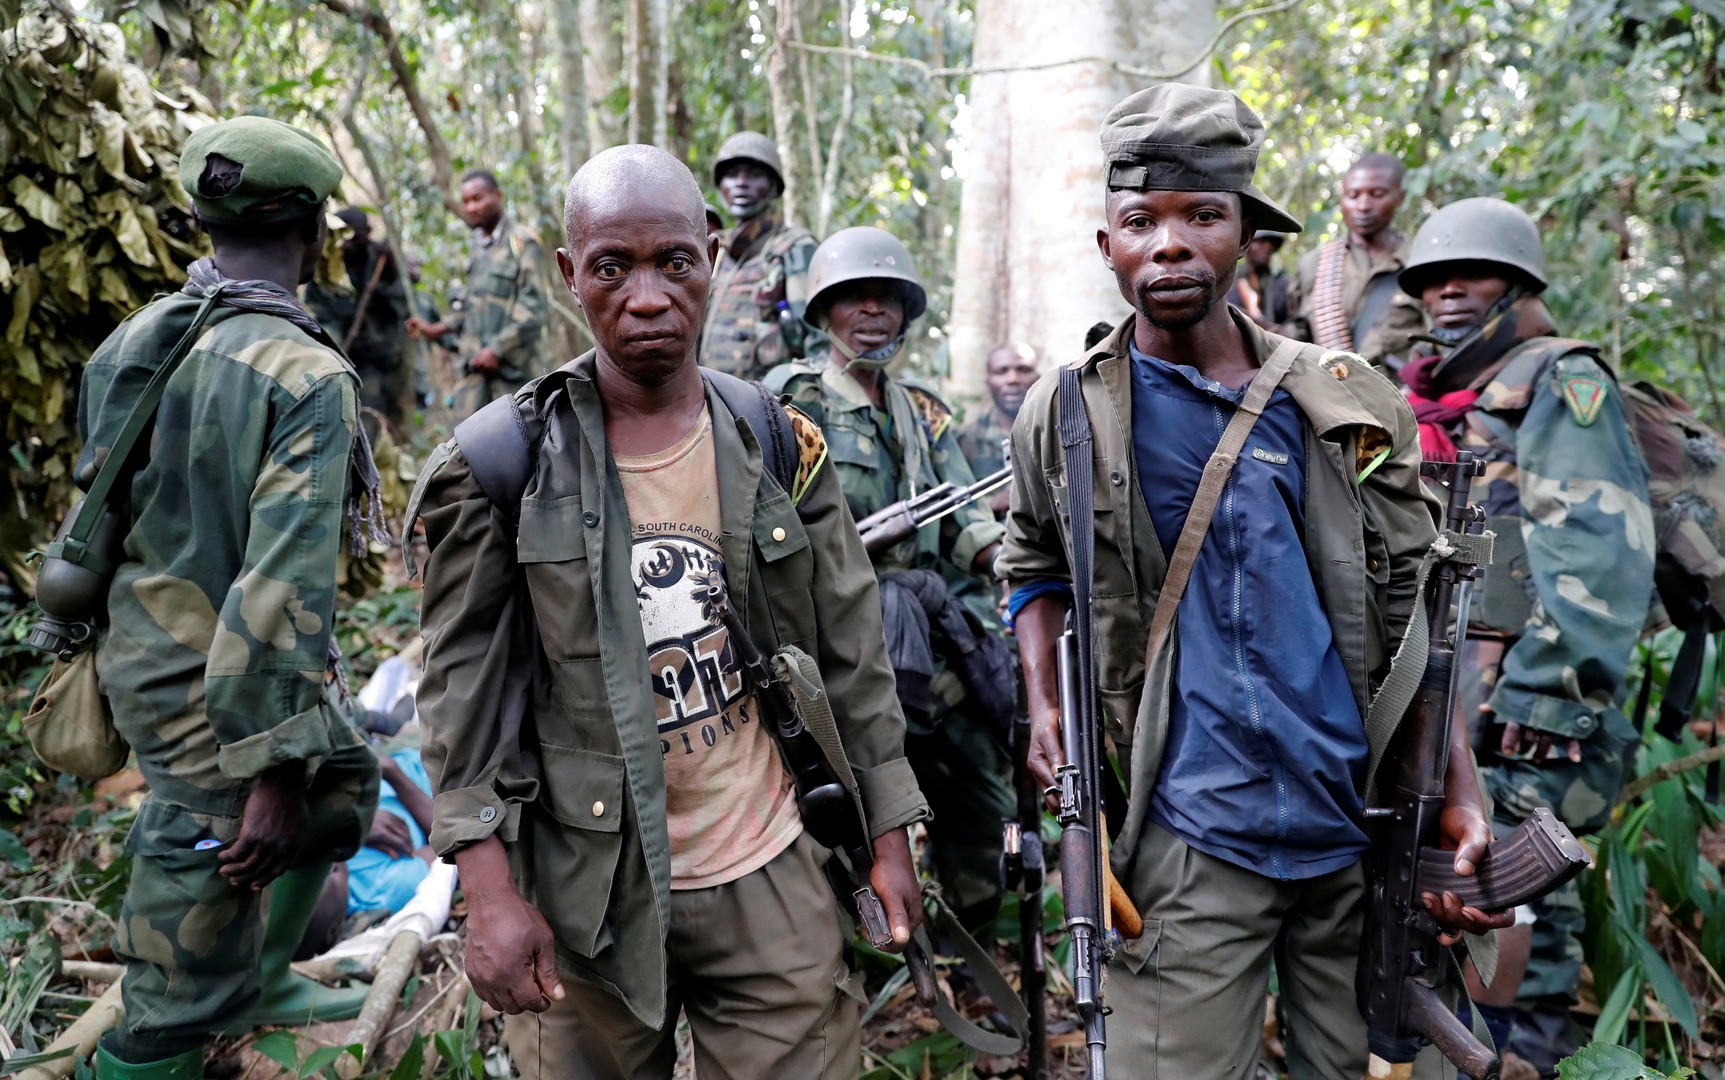 مقتل 22 مدنيا في الكونغو الديمقراطية في معارك وأعمال عنف عرقية